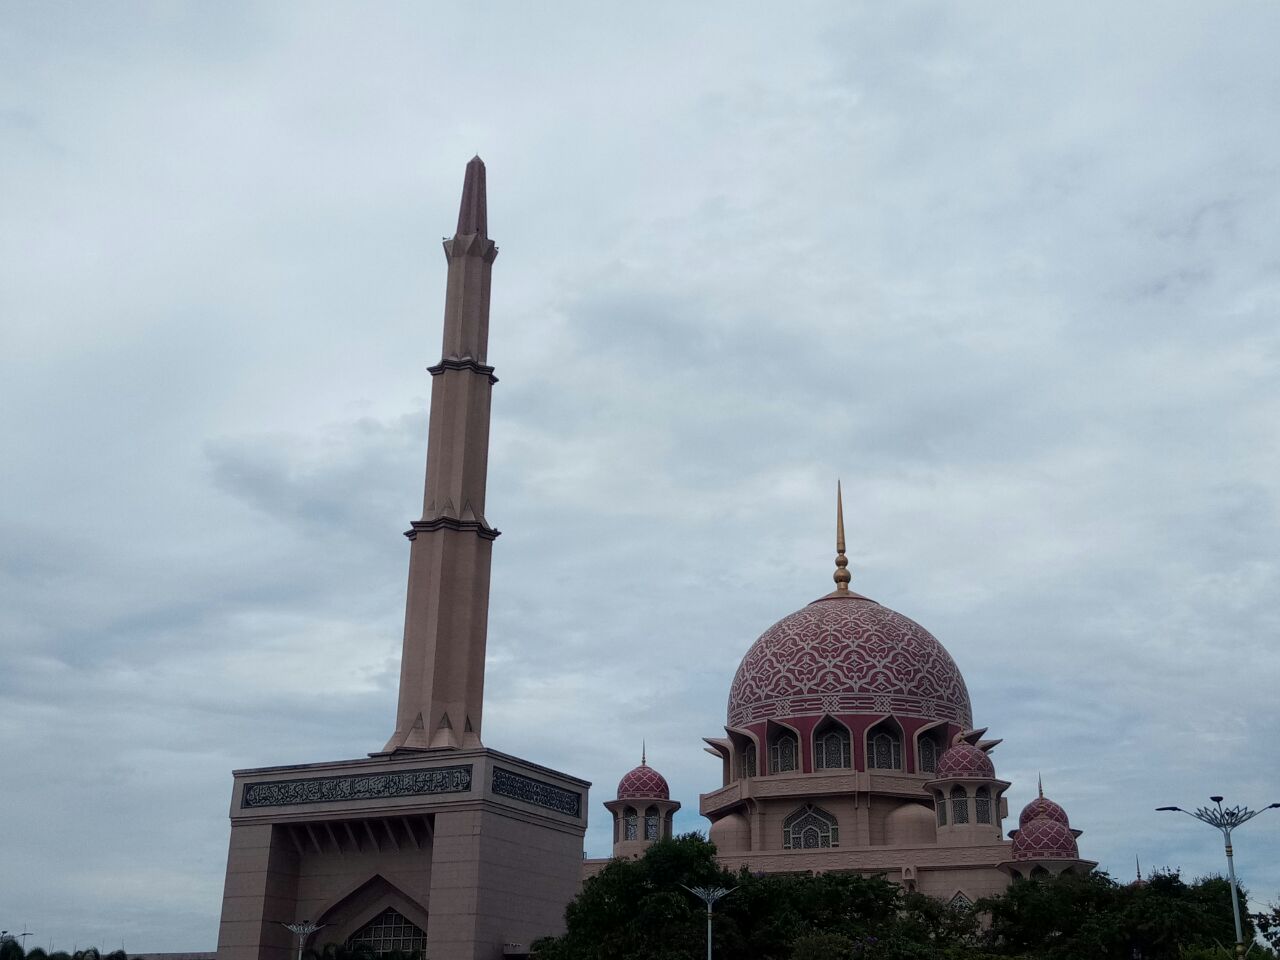 【携程攻略】布城粉红清真寺景点,粉红清真寺位于马来西亚新行政中心布城，也称为布特拉清真寺。整座清…